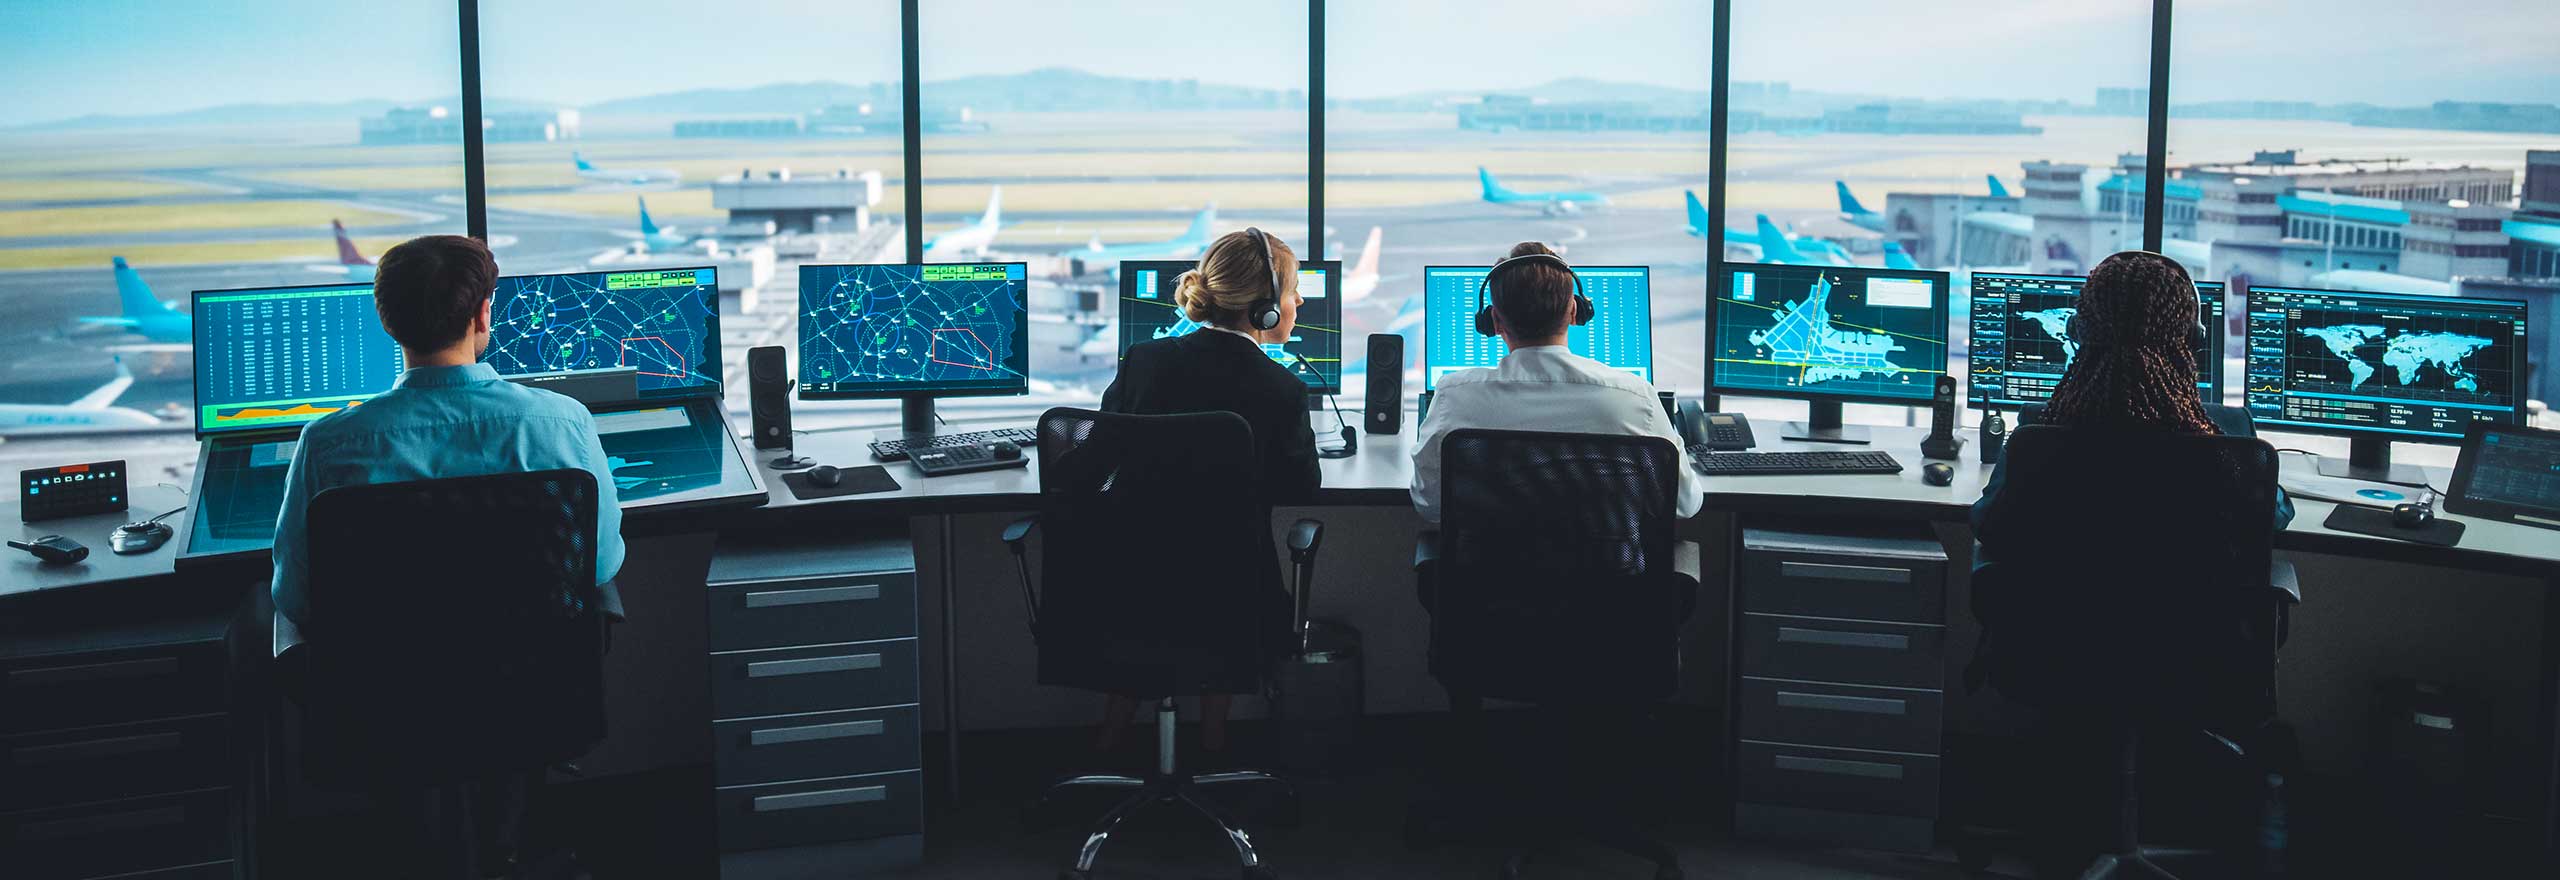 Controladores de tráfico aéreo que gestionan el tráfico aéreo